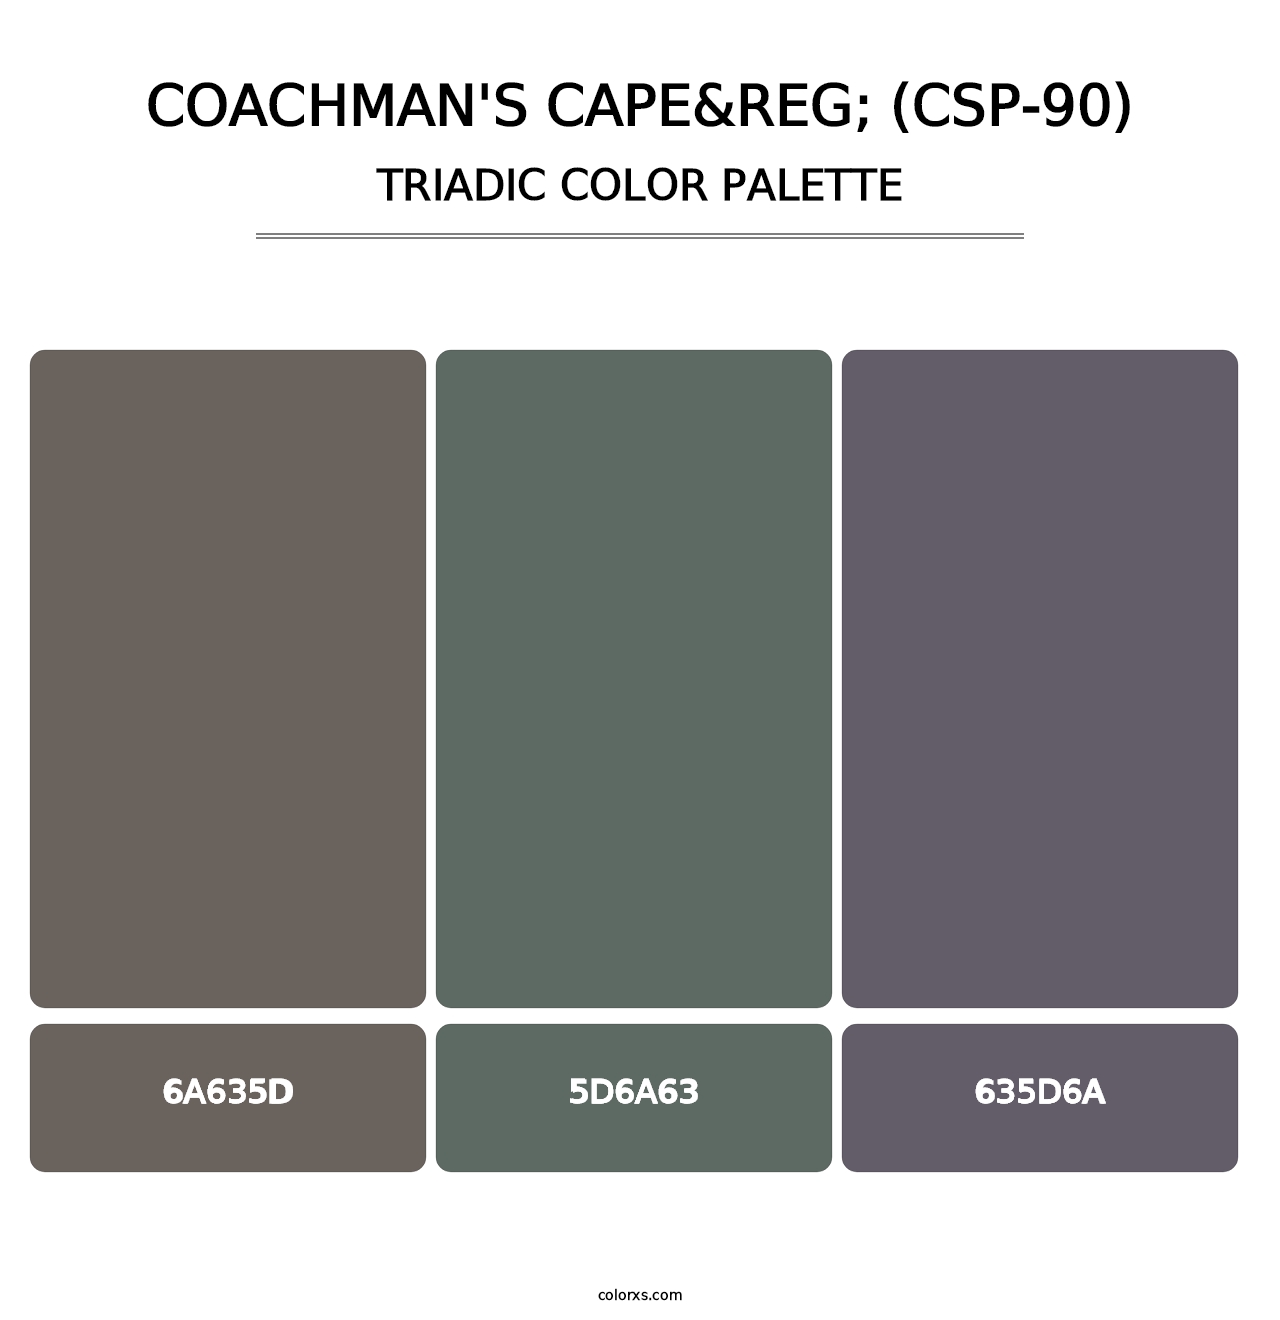 Coachman's Cape&reg; (CSP-90) - Triadic Color Palette